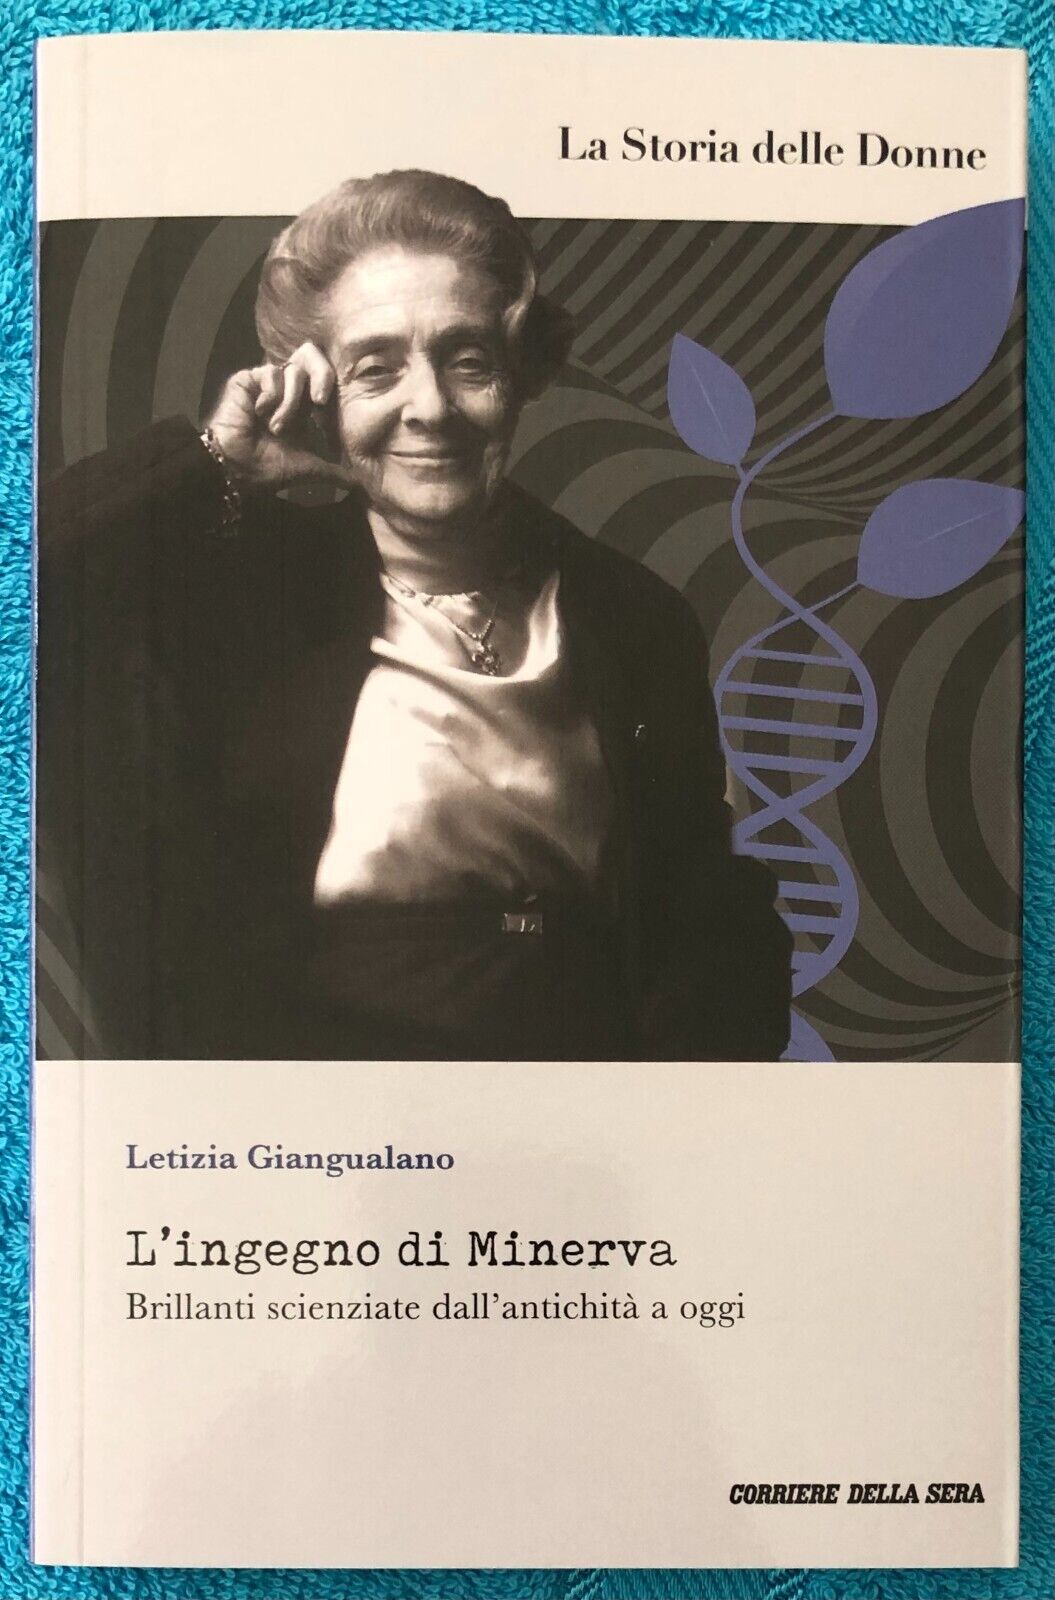 La Storia delle Donne n. 1 - L'ingegno di Minerva di Letizia Giangualano,  2022,